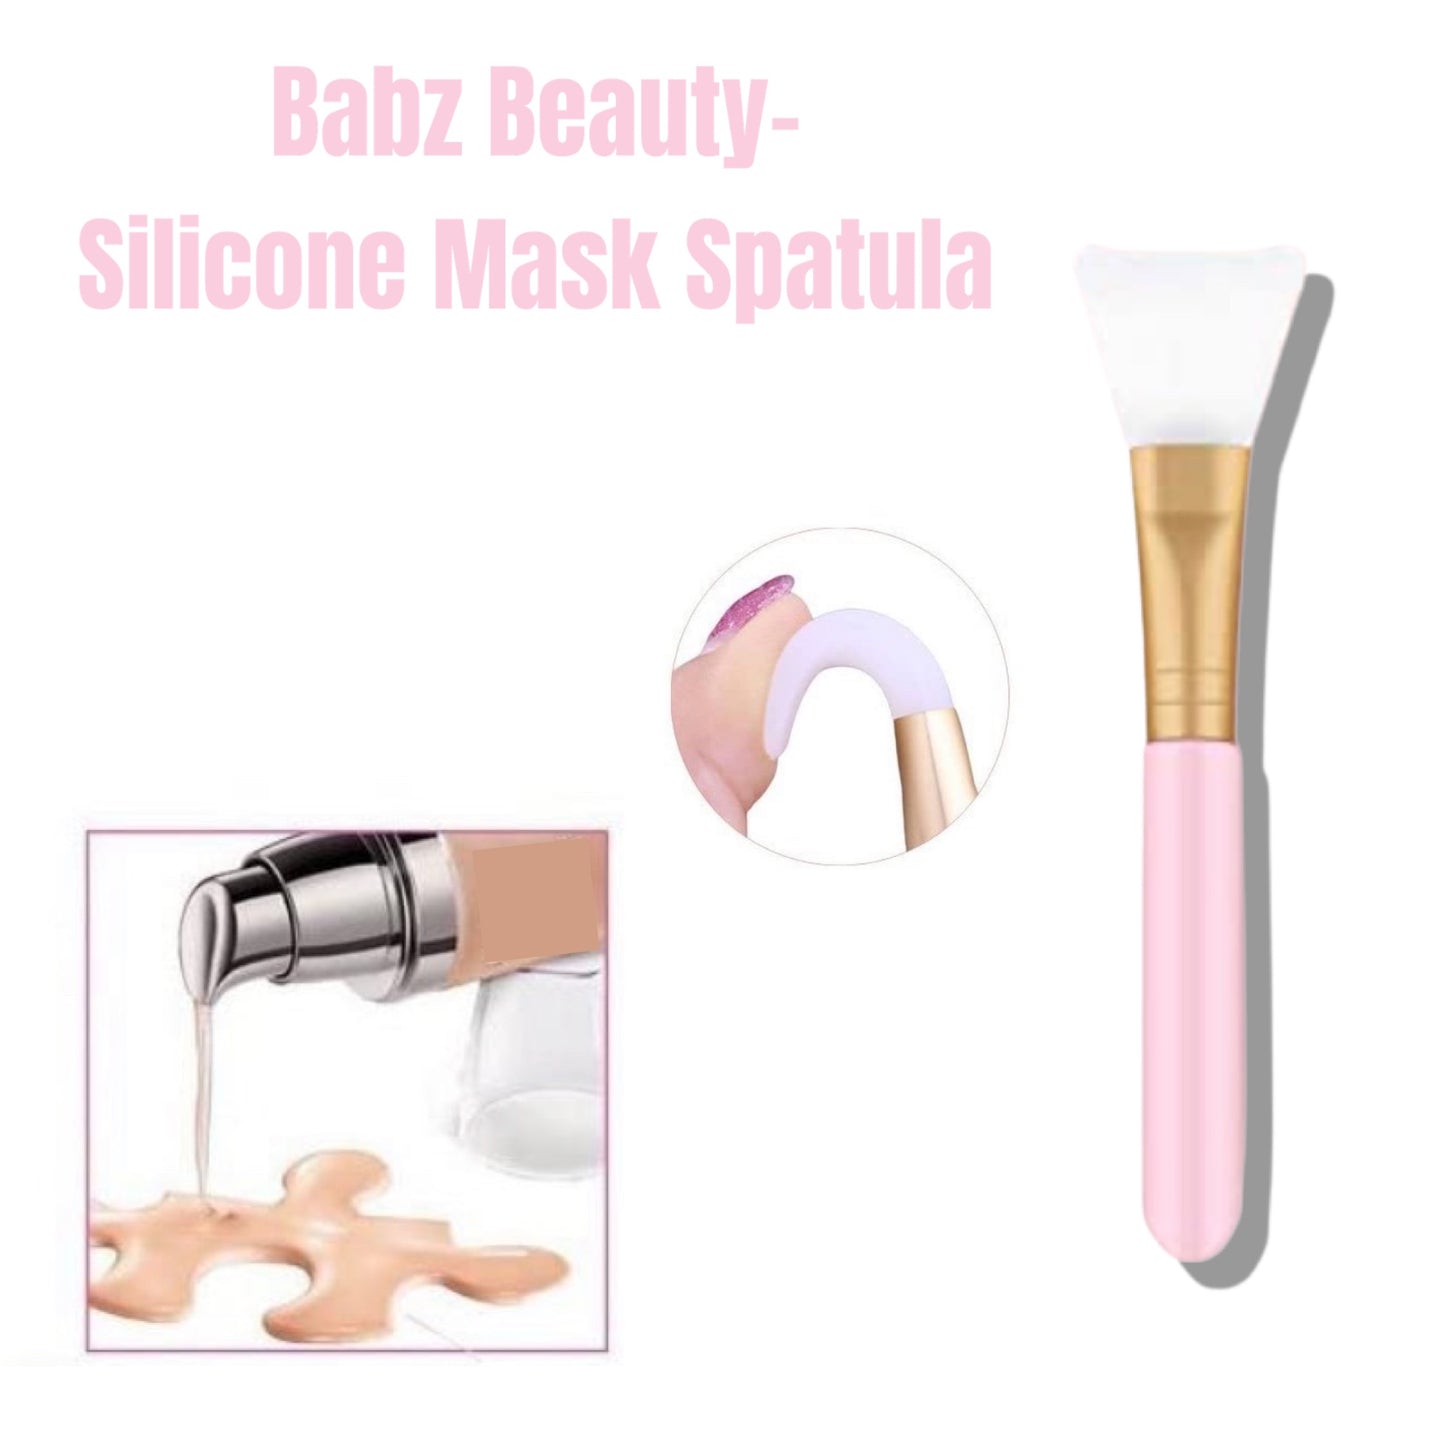 Babz Beauty- Silicone Mask Spatula